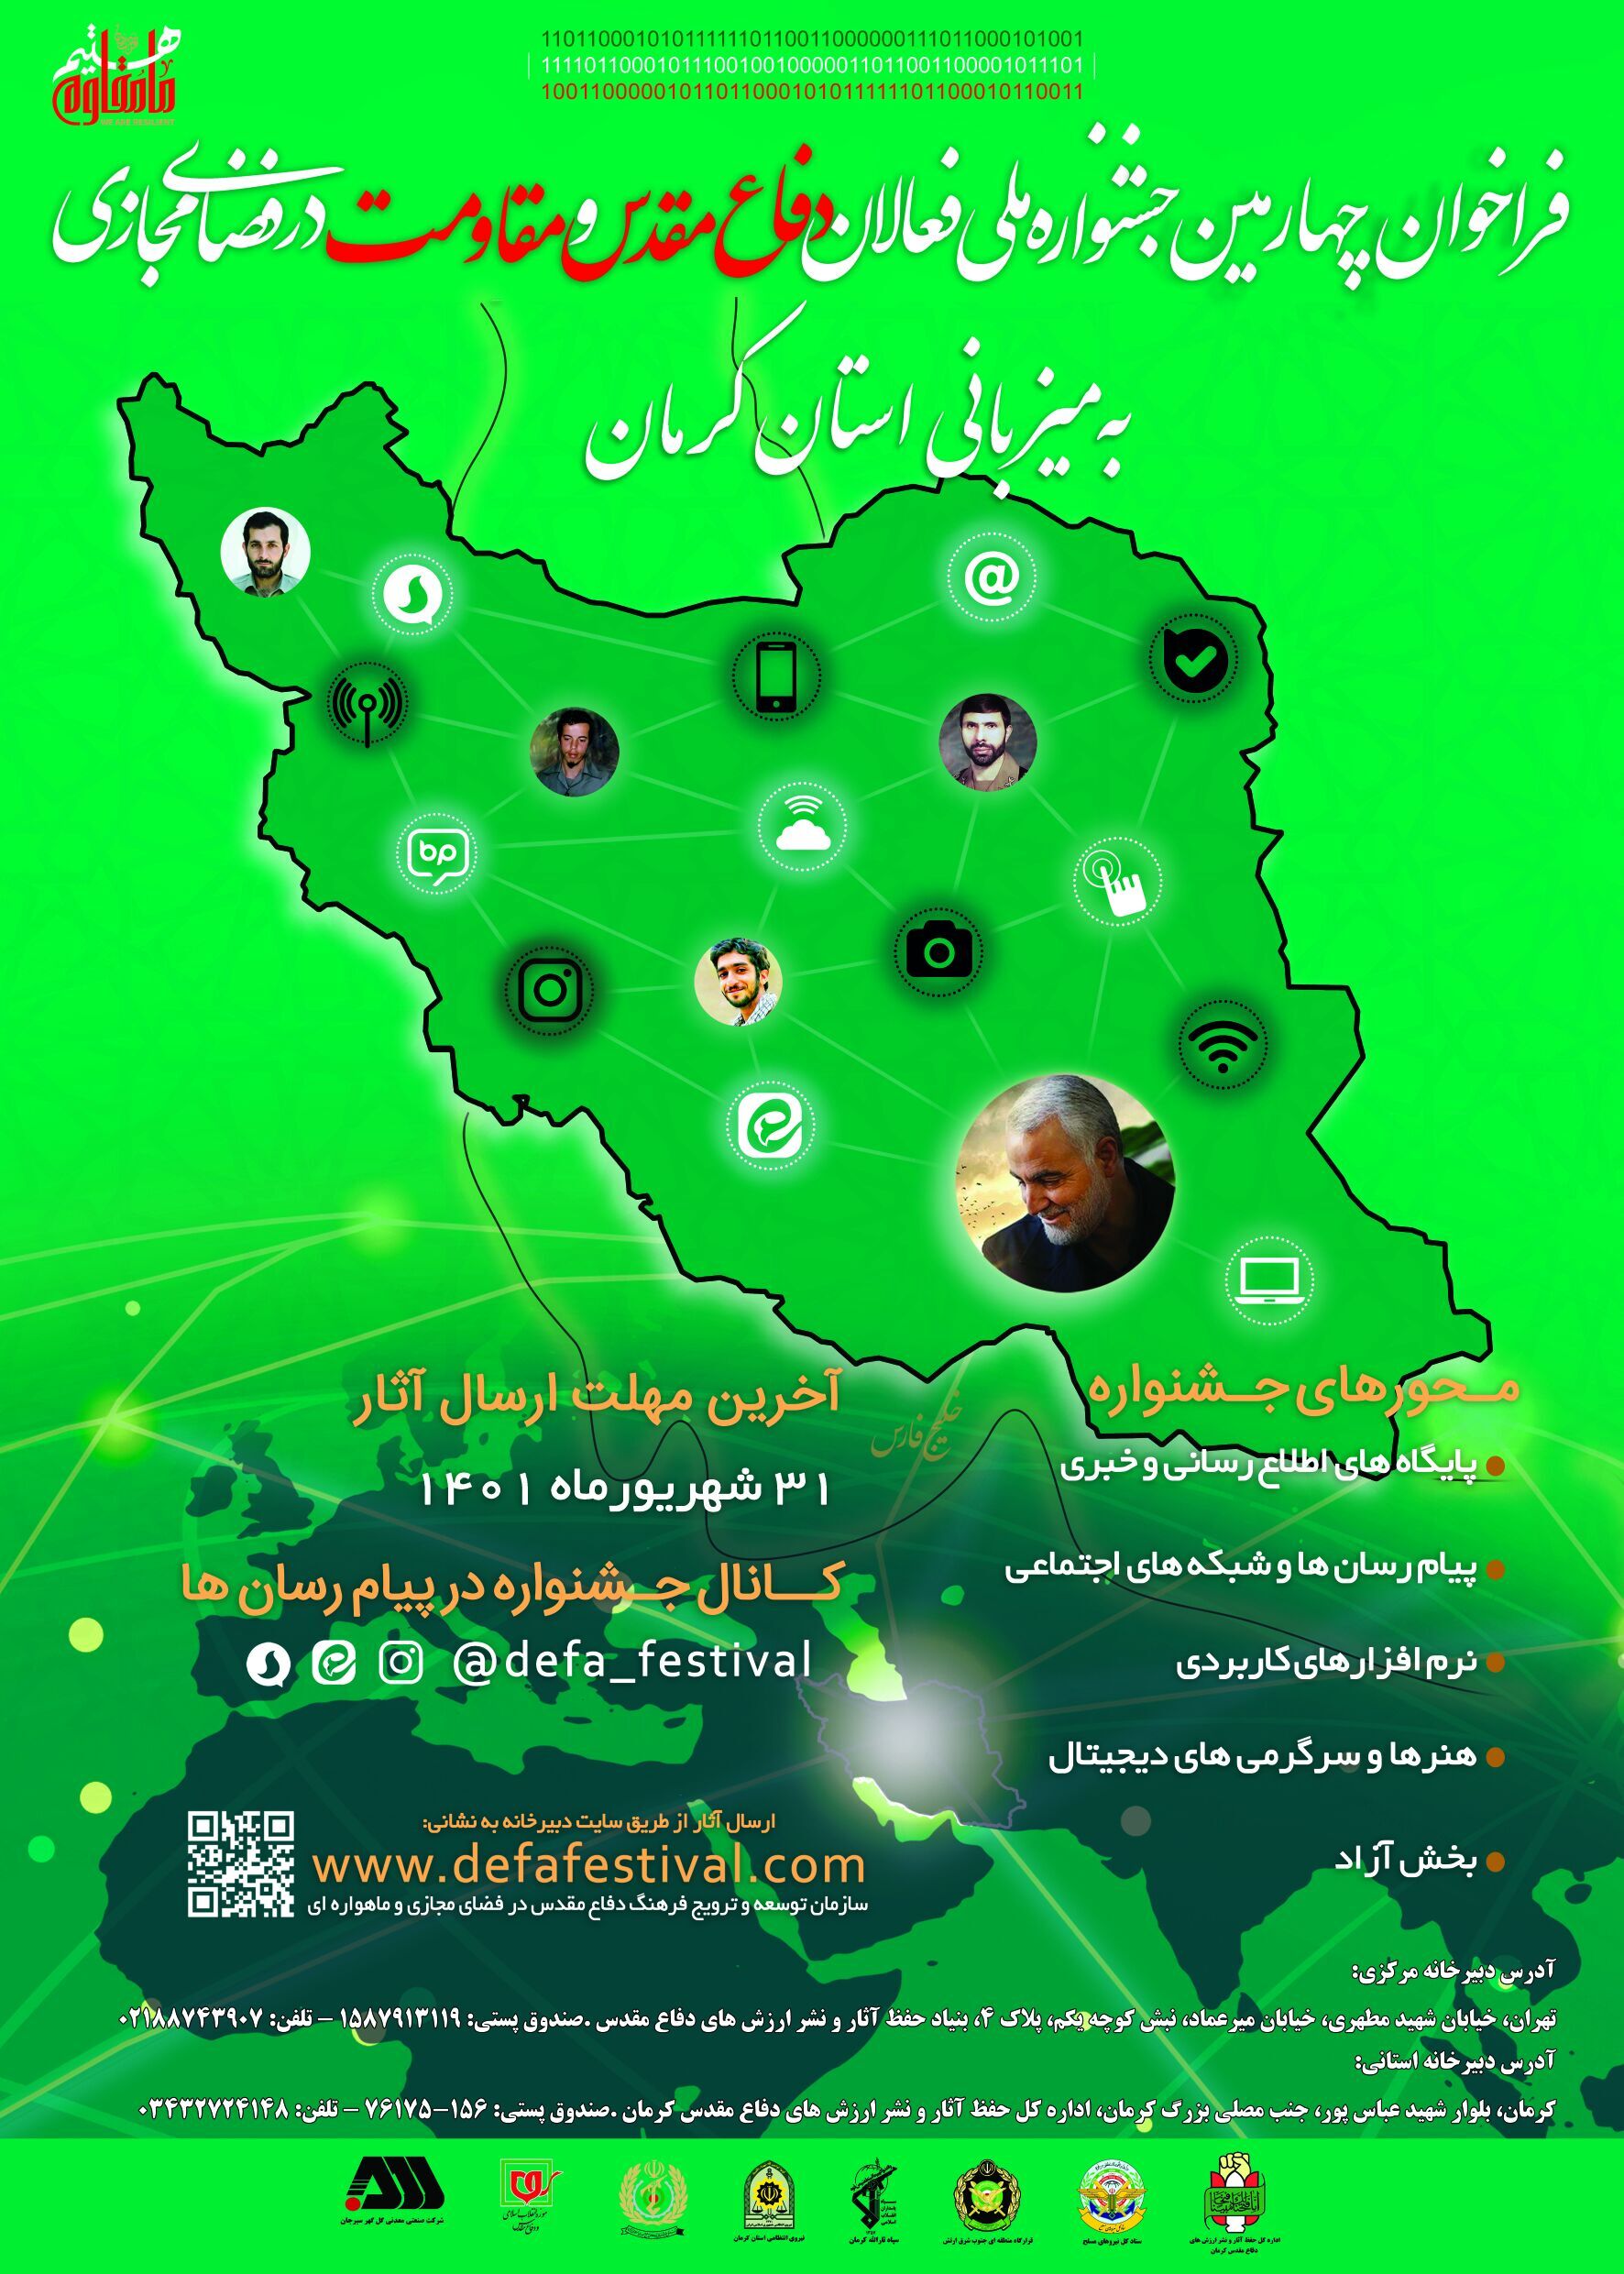 فراخوان چهارمین جشنواره فعالان دفاع مقدس و مقاومت در فضای مجازی به میزبانی استان کرمان